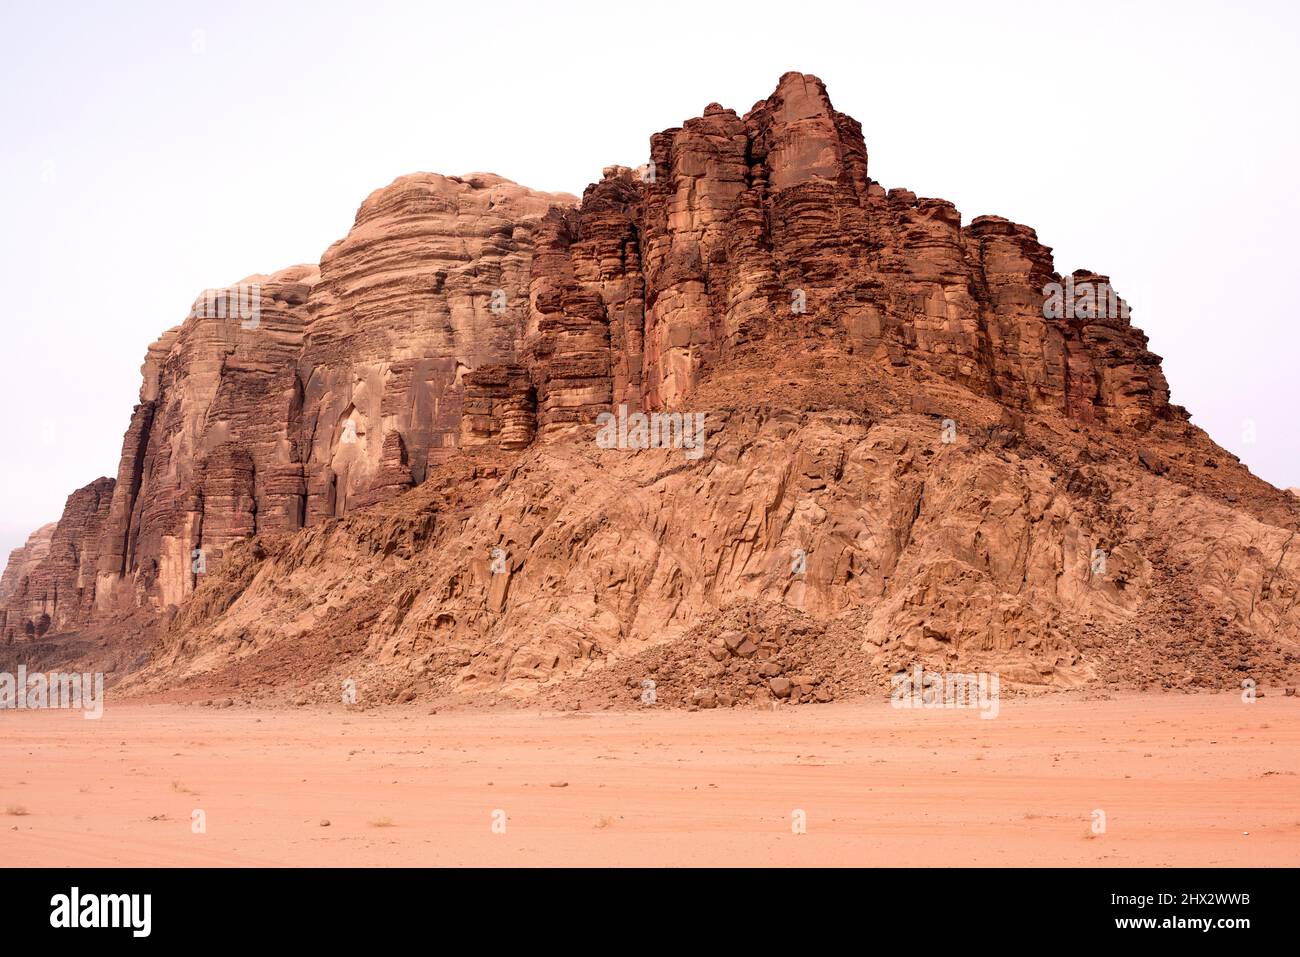 Wadi Rum o Valle de la Luna (Patrimonio de la Humanidad de la UNESCO). Siete pilares de la Sabiduría. Montaña de piedra arenisca sobre roca magmática. Inconformidad geológica Foto de stock